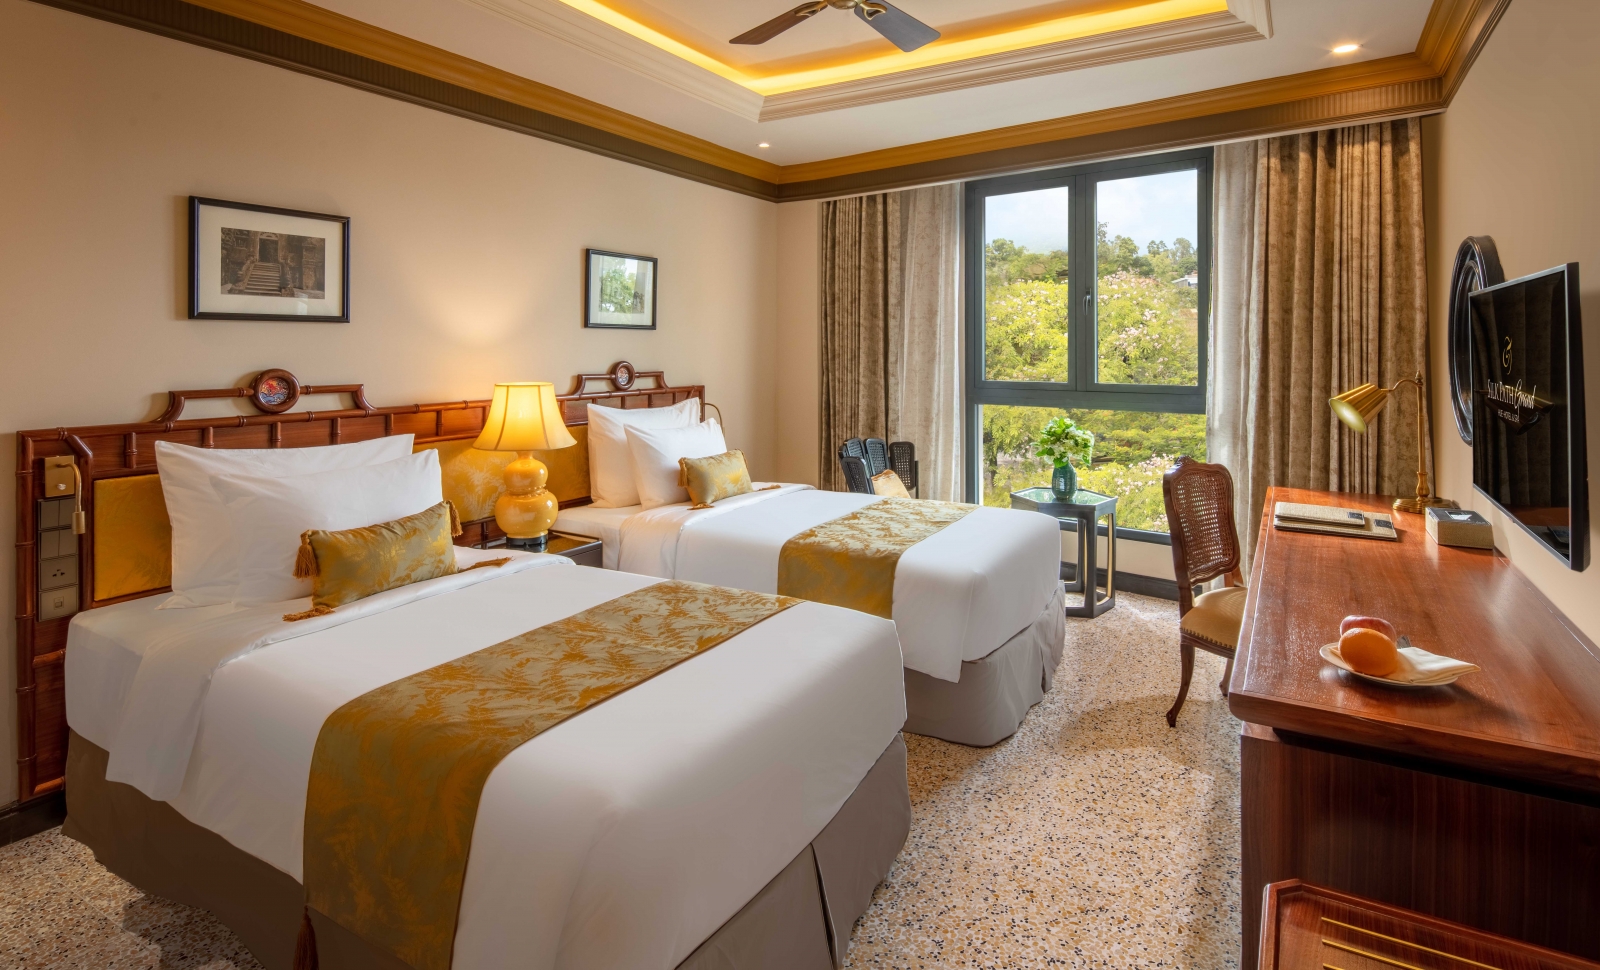 Khách sạn Silk Path Hue - yên bình nơi đất Cố Đô